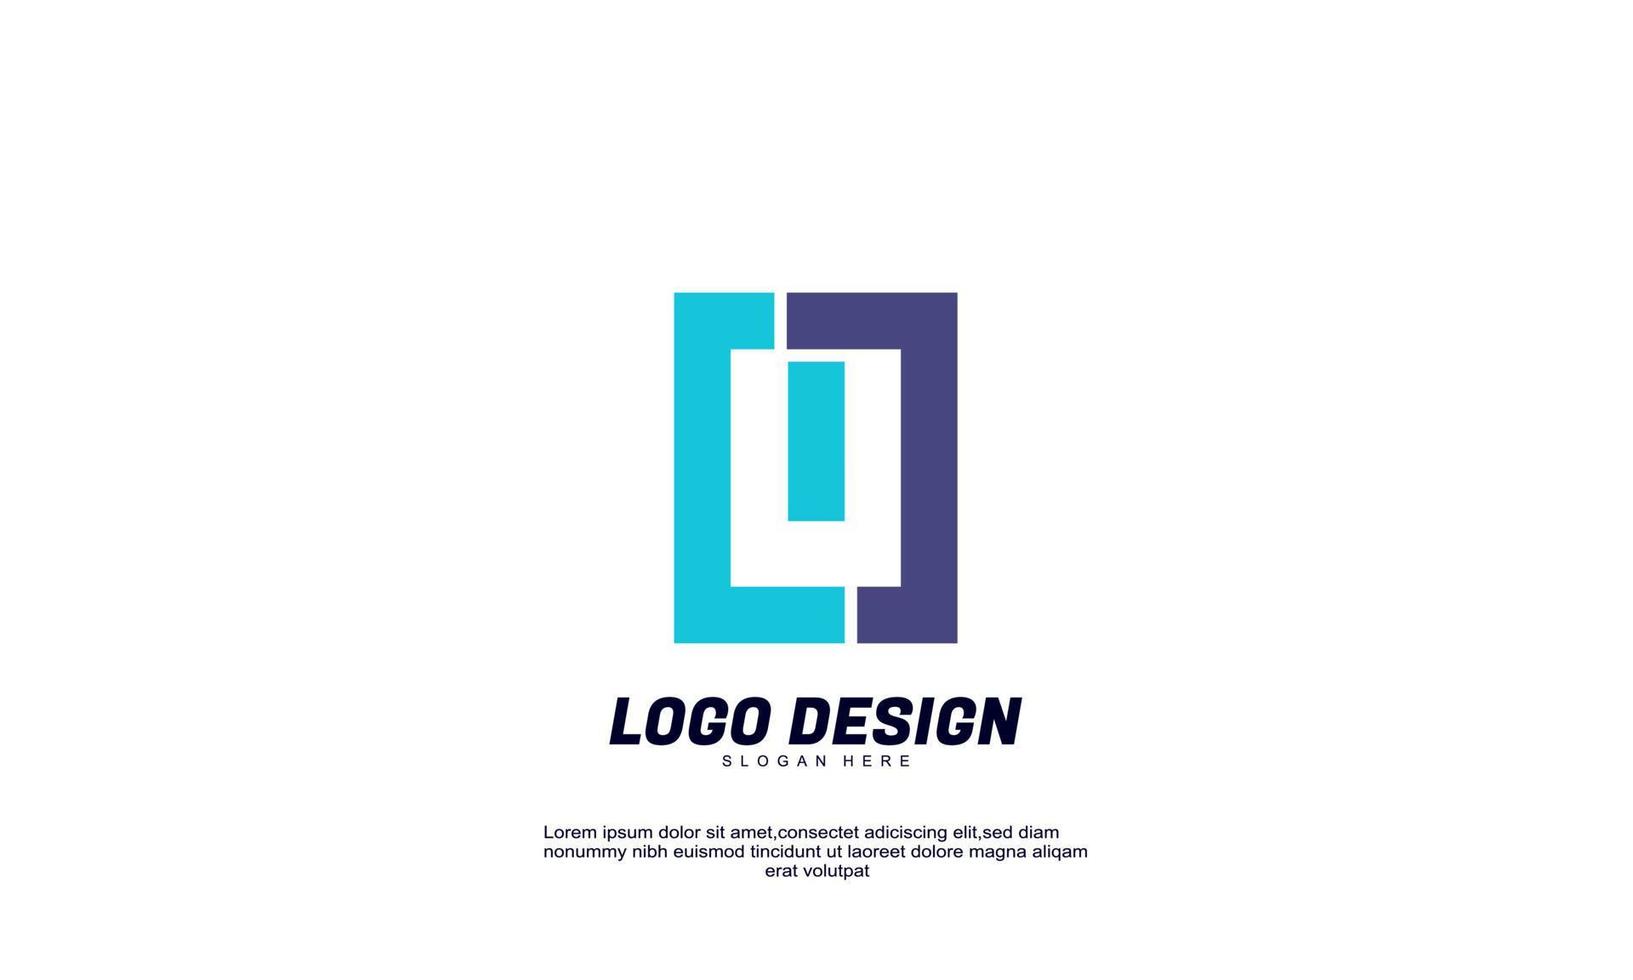 ideia criativa de estoque para construção de empresa de logotipo moderno e vetor de design plano colorido de negócios